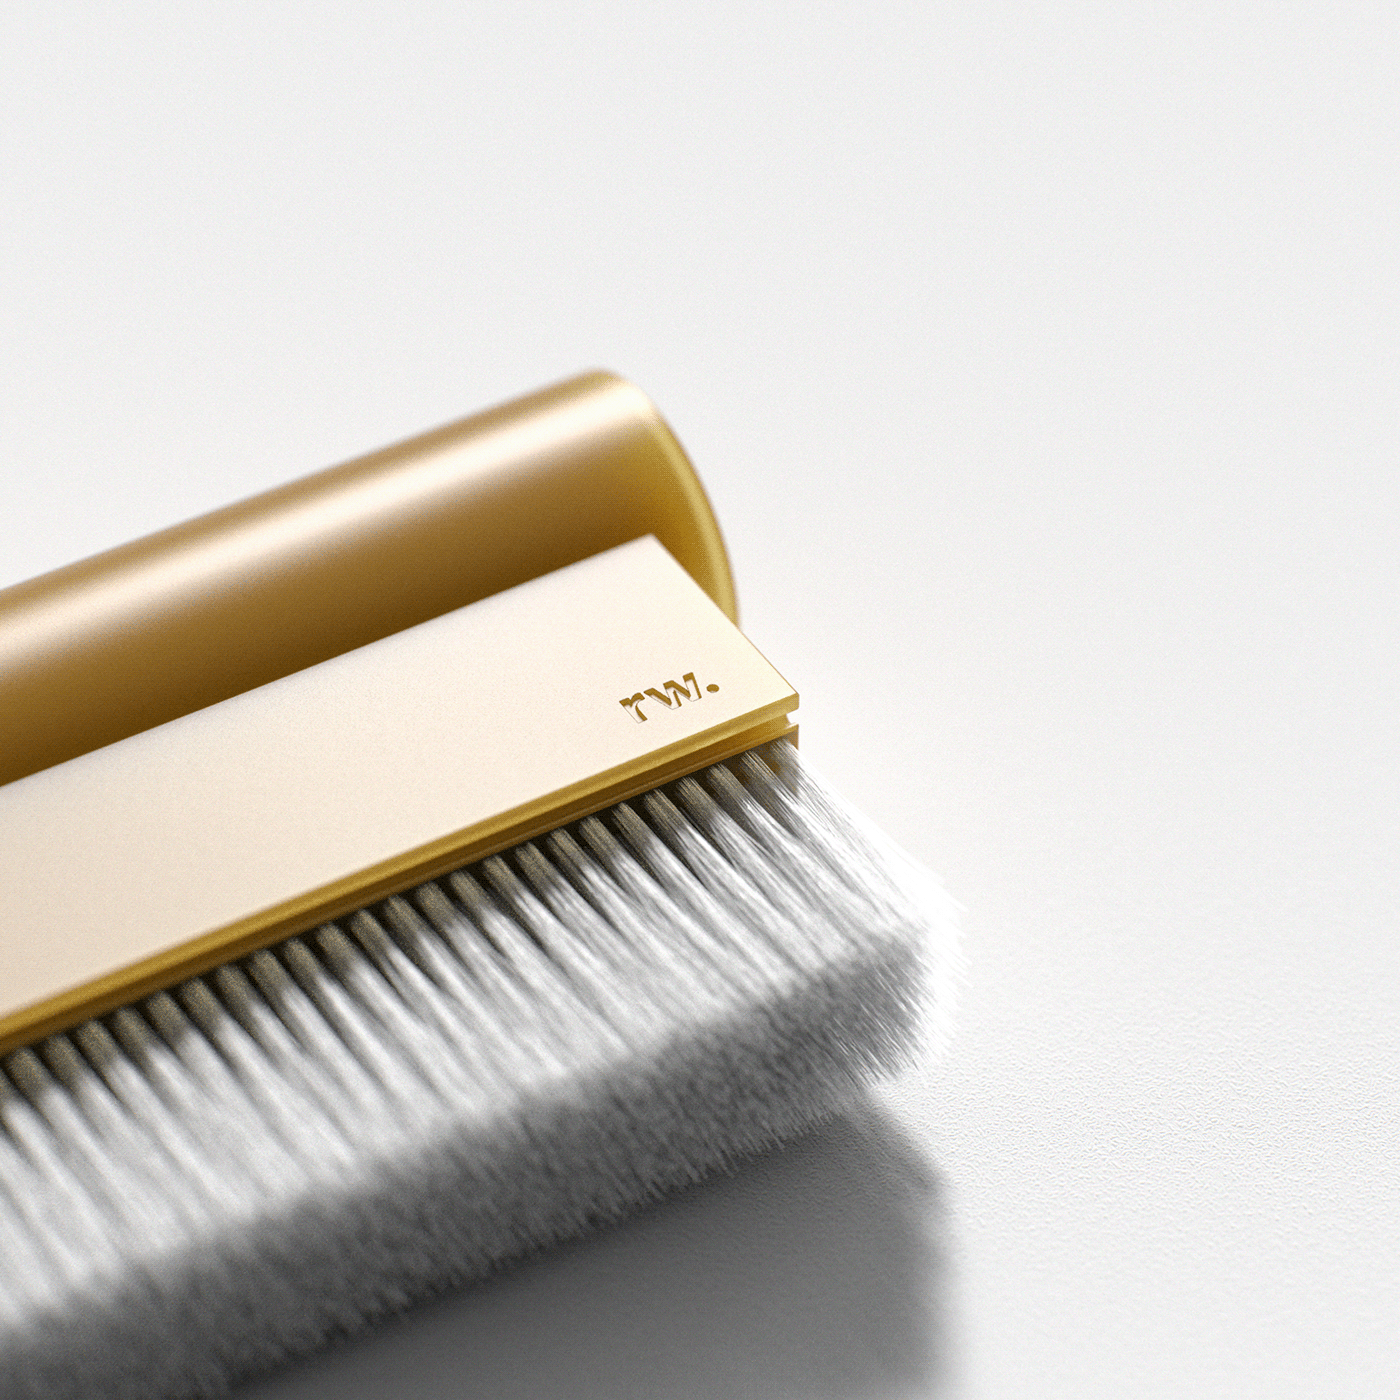 Broom brush dustpan industrial design  keyshot minimal product Render render weekly Renderweekly